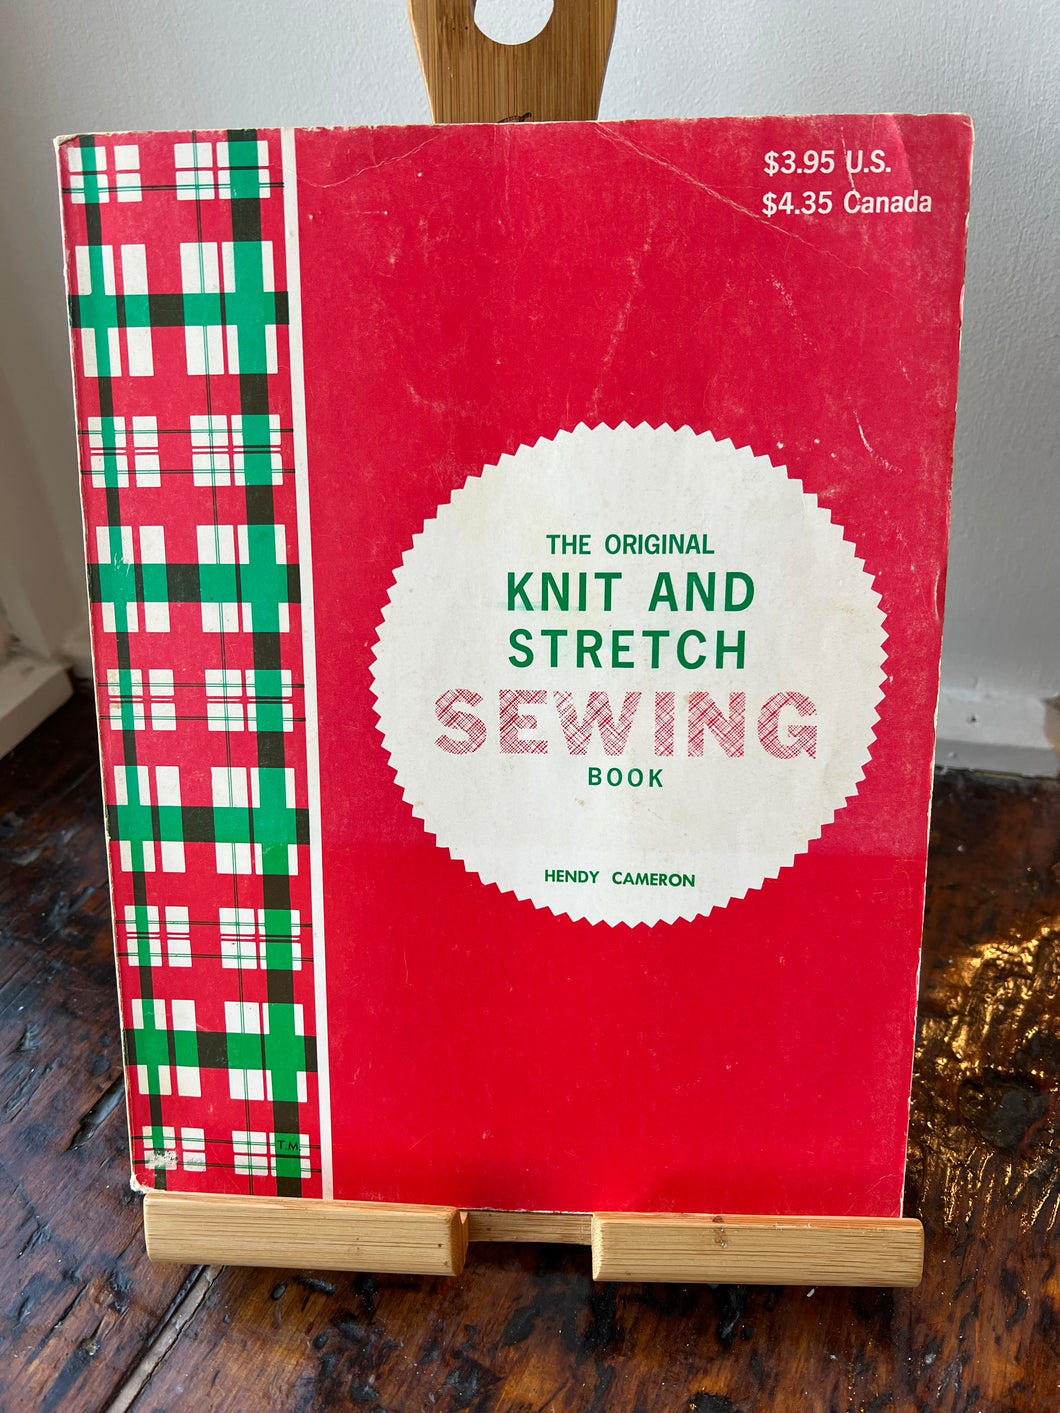 The original knit & stretch sewing book